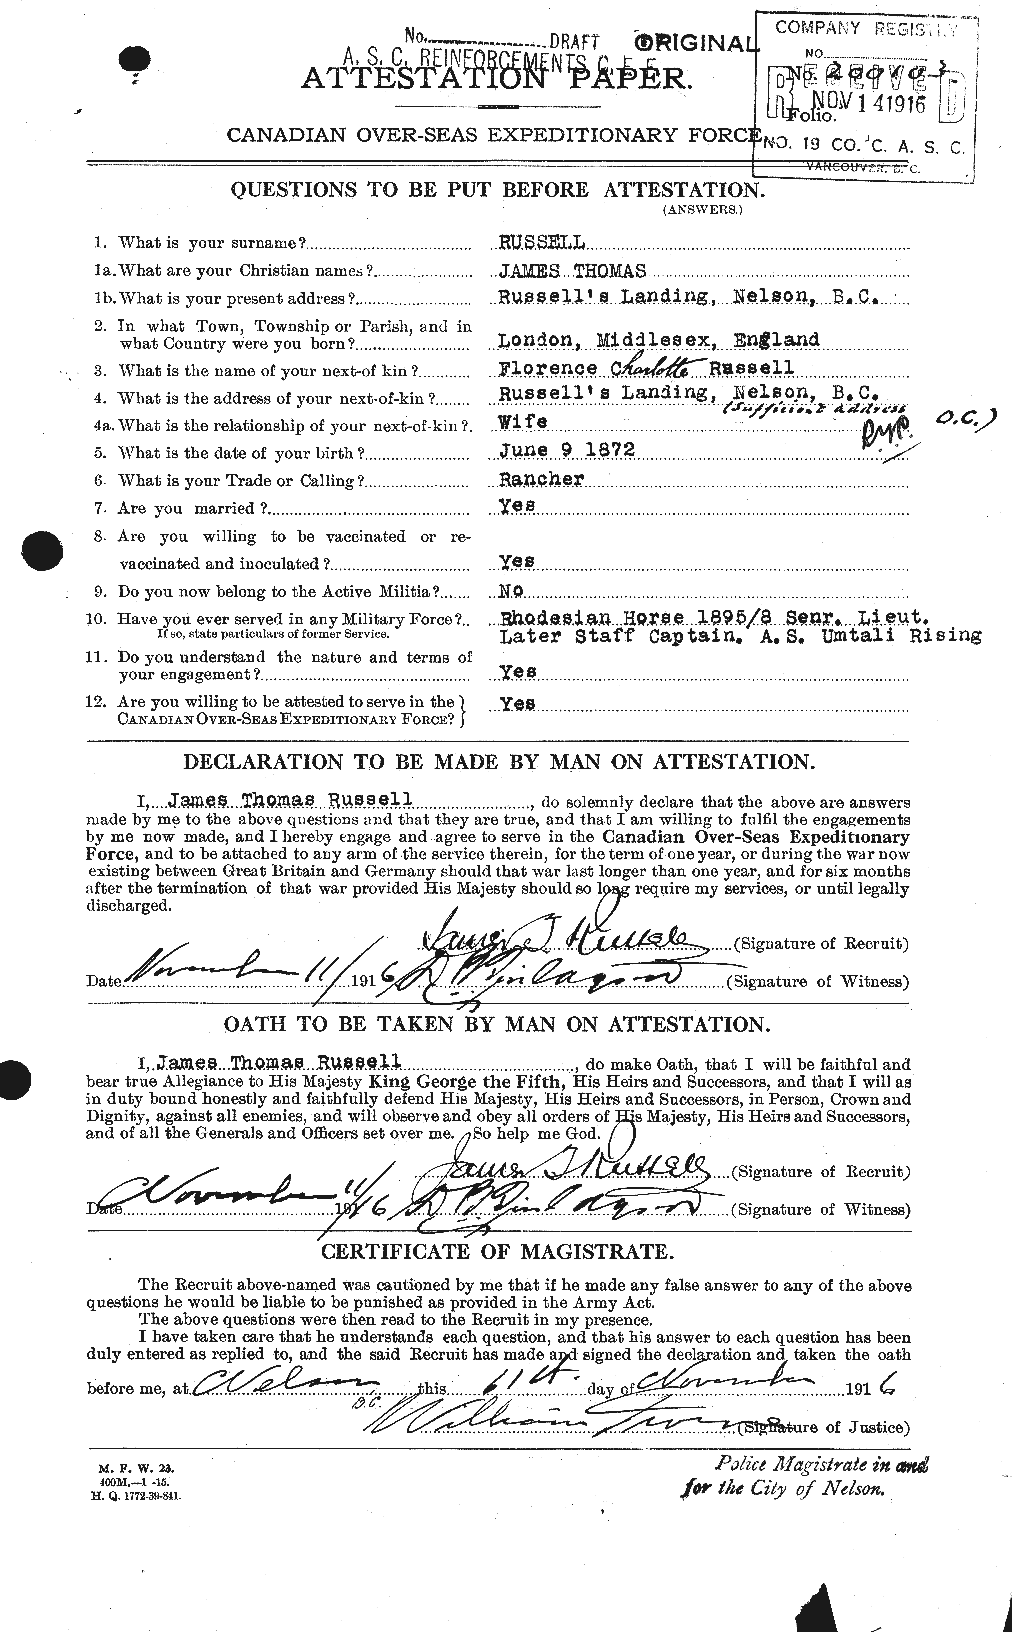 Dossiers du Personnel de la Première Guerre mondiale - CEC 619079a